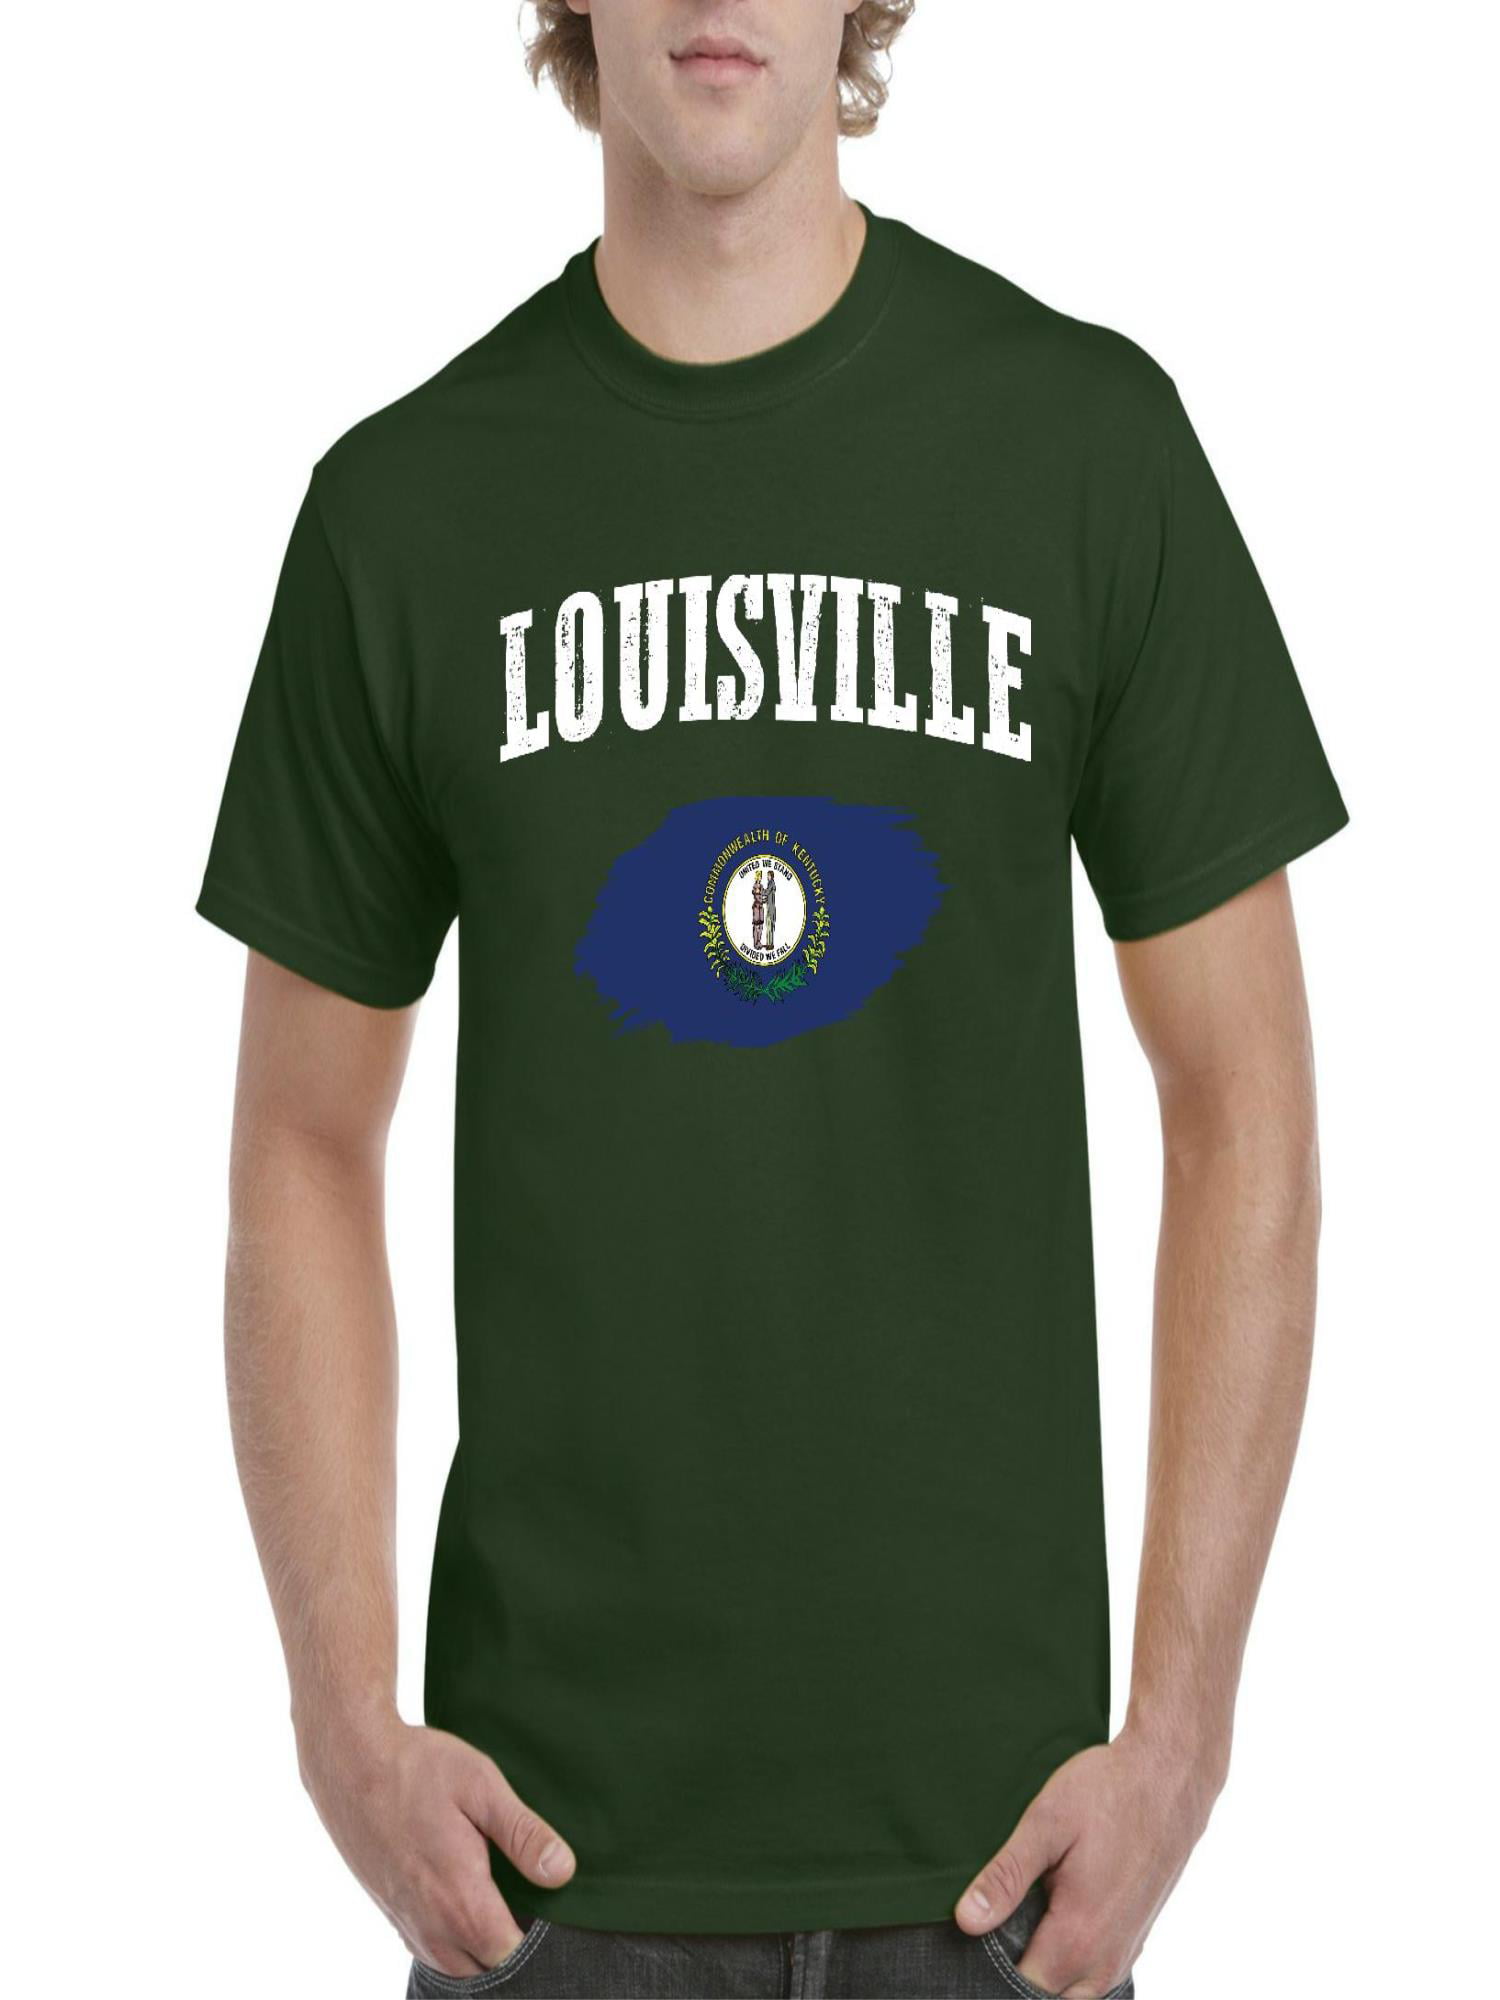 NIB - Men's T-Shirt Short Sleeve, up to Men Size 5XL - Louisville